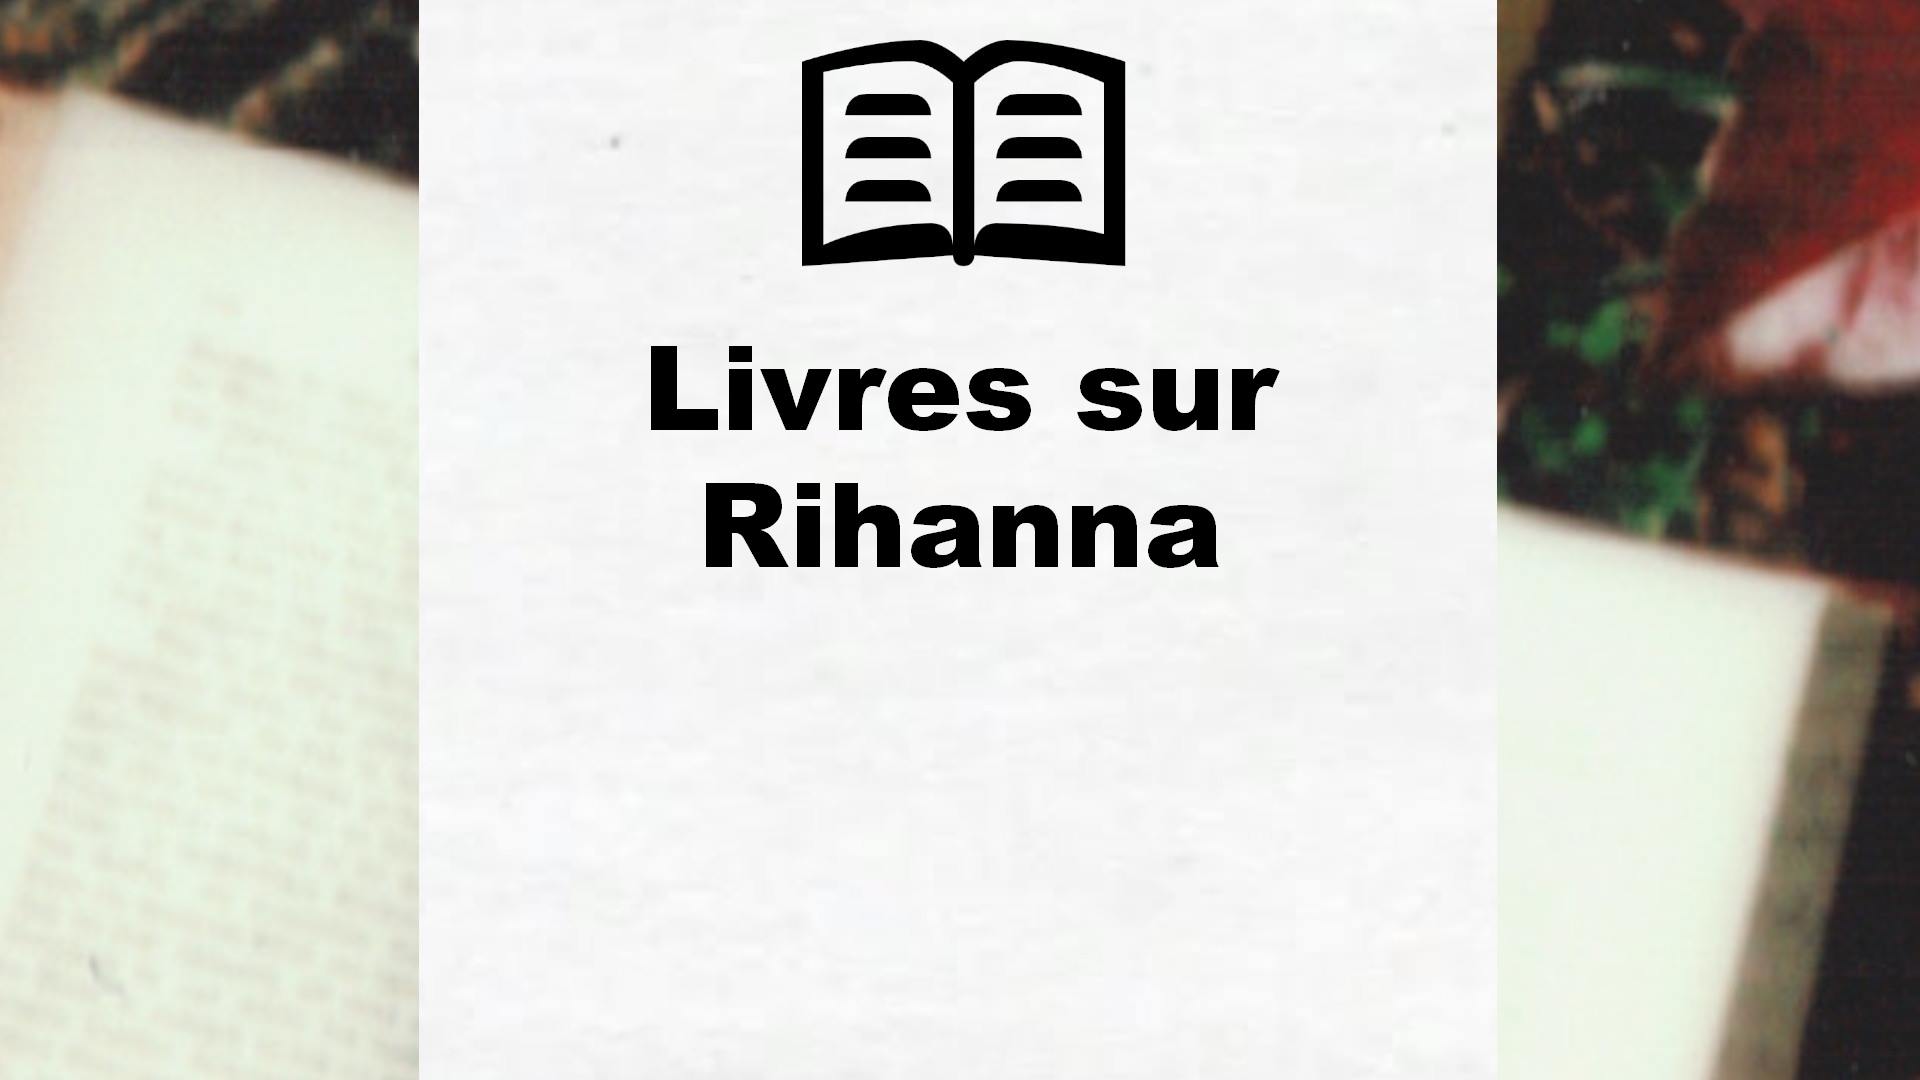 Livres sur Rihanna